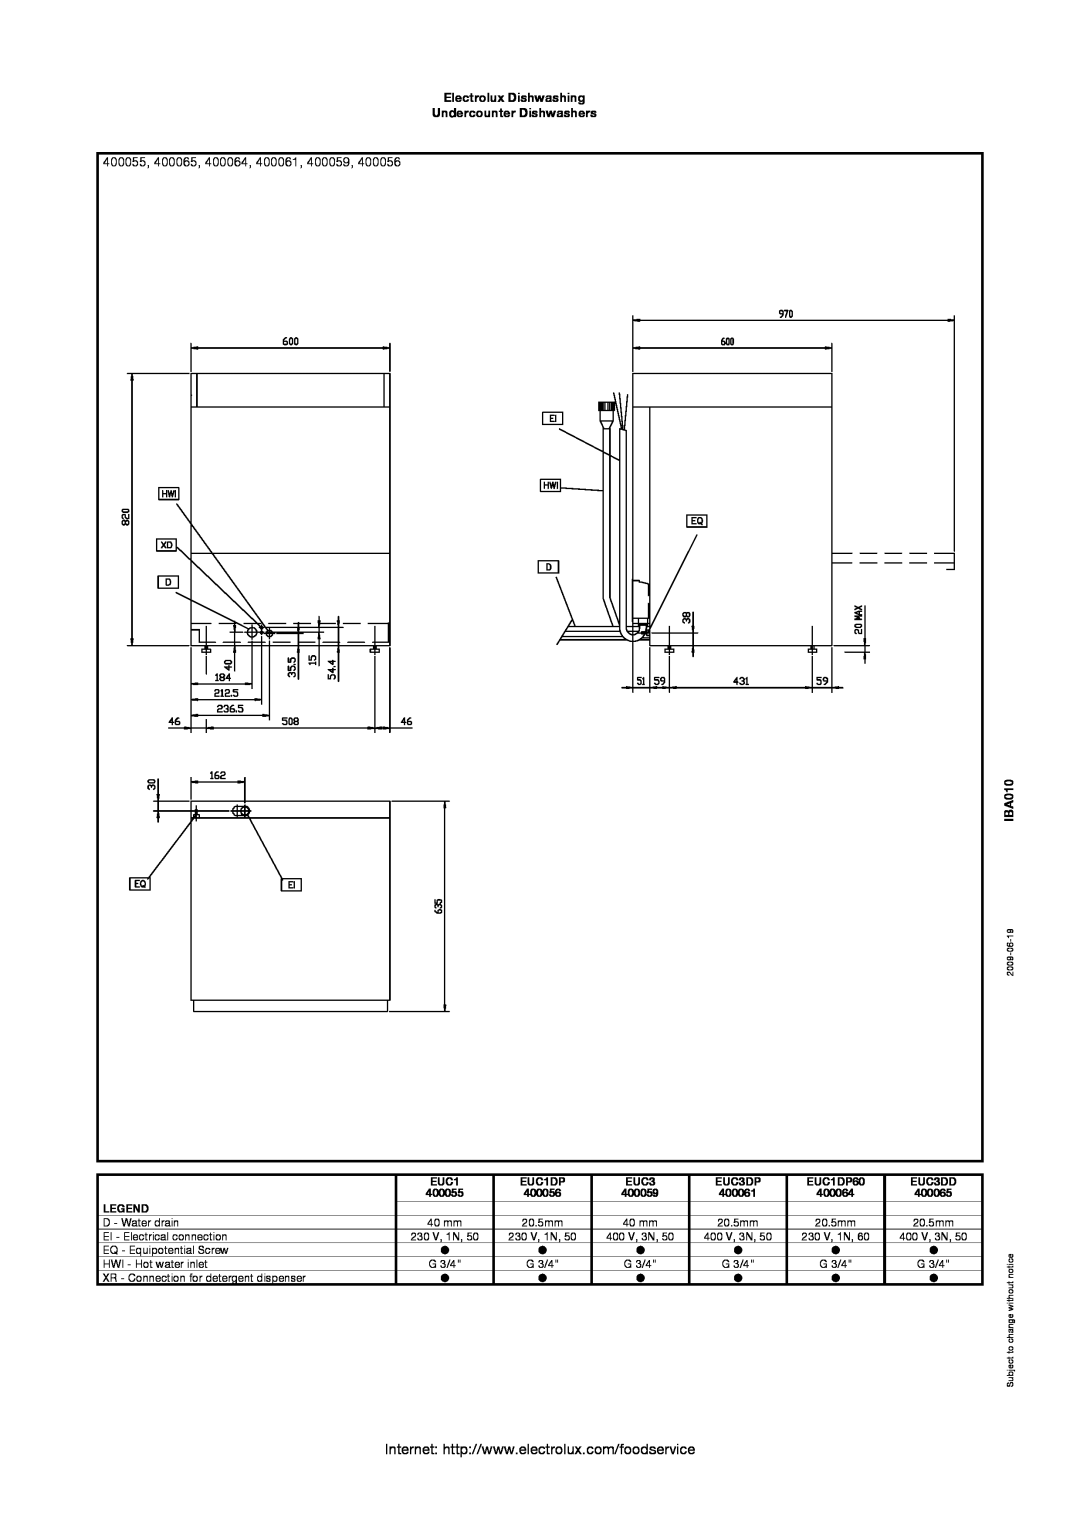 Electrolux EUC1DP, EUC3DD 400055, 400065, 400064, 400061, 400059, Electrolux Dishwashing Undercounter Dishwashers, IBA010 